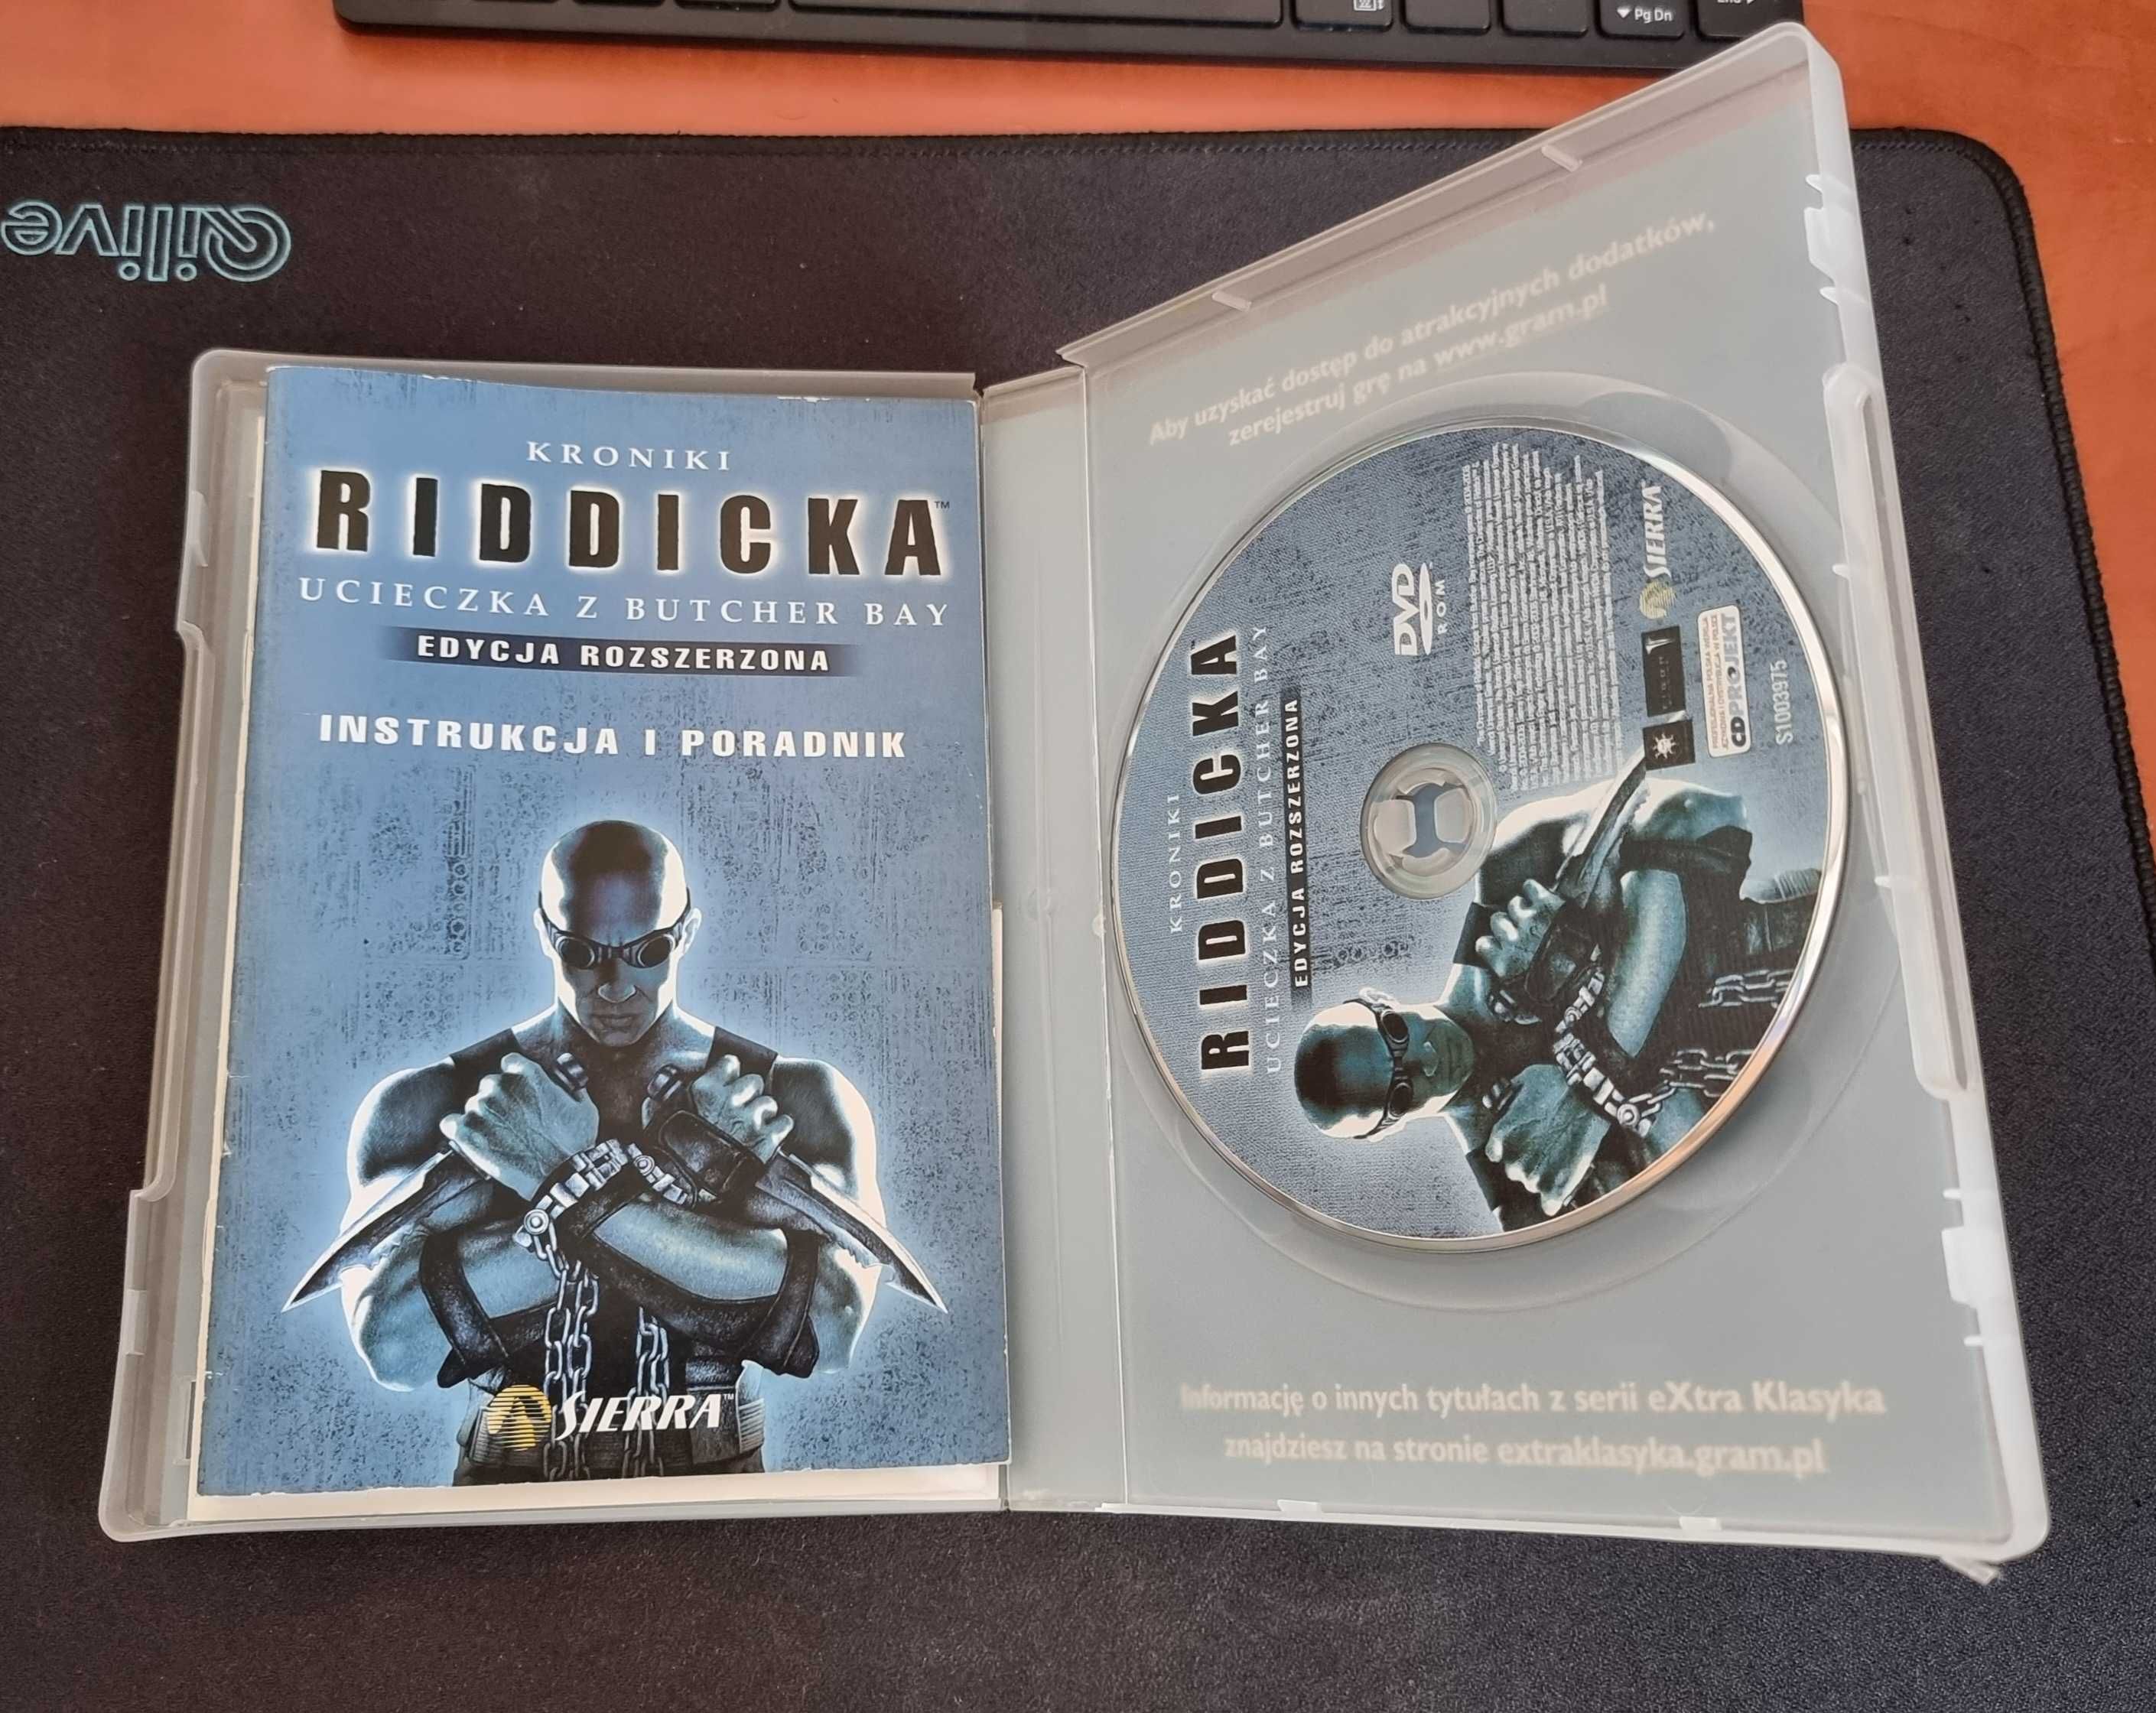 Kroniki Riddicka: Ucieczka z Butcher Bay, Edycja rozszerzona